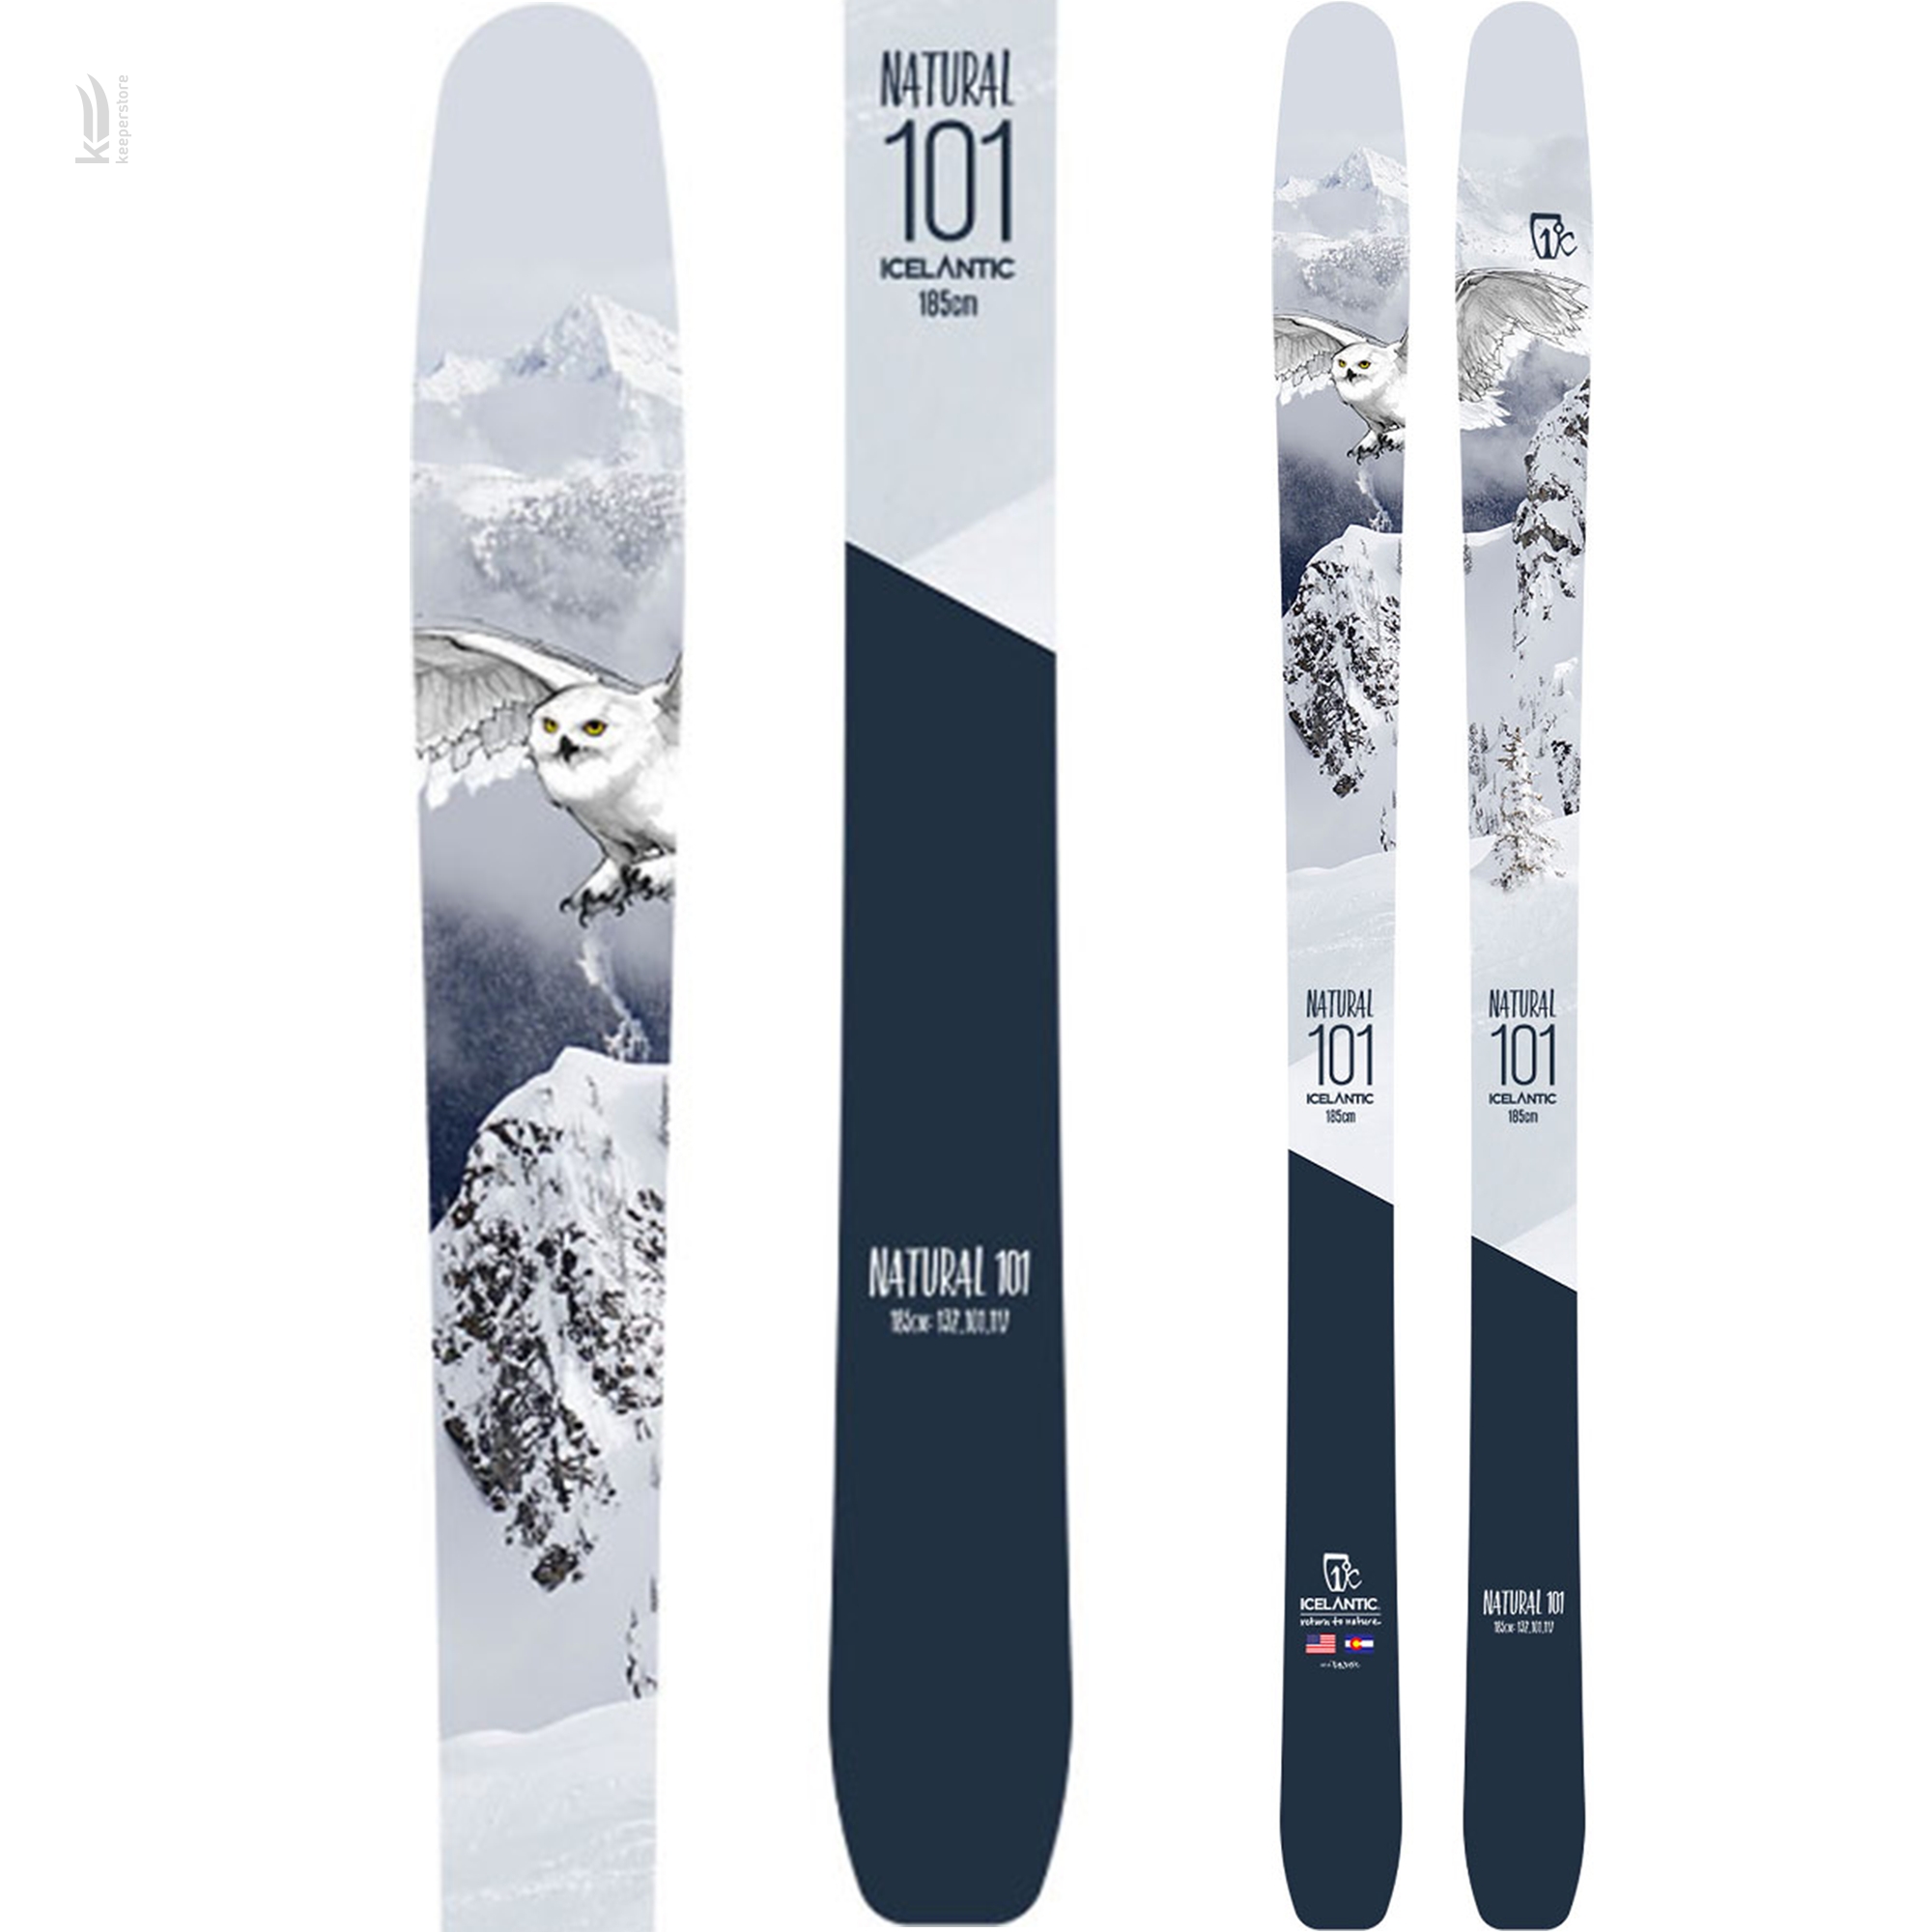 Лыжи для бэккантри Icelantic Natural 101 2018/2019 171cm